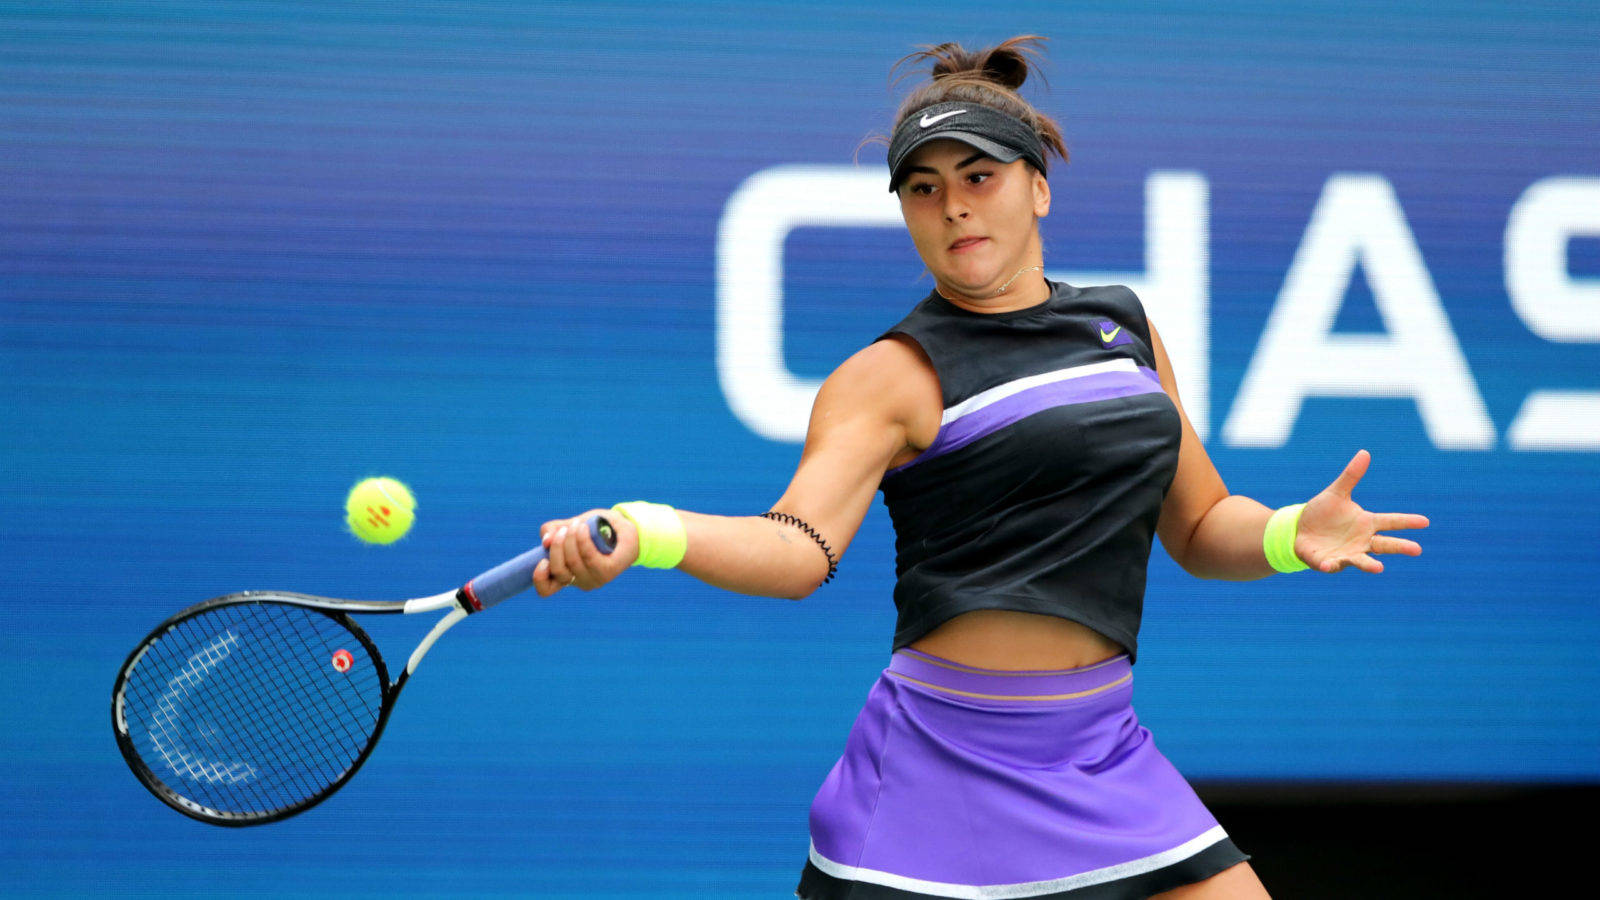 Giocatricedi Tennis Professionista - Bianca Andreescu In Azione Sfondo